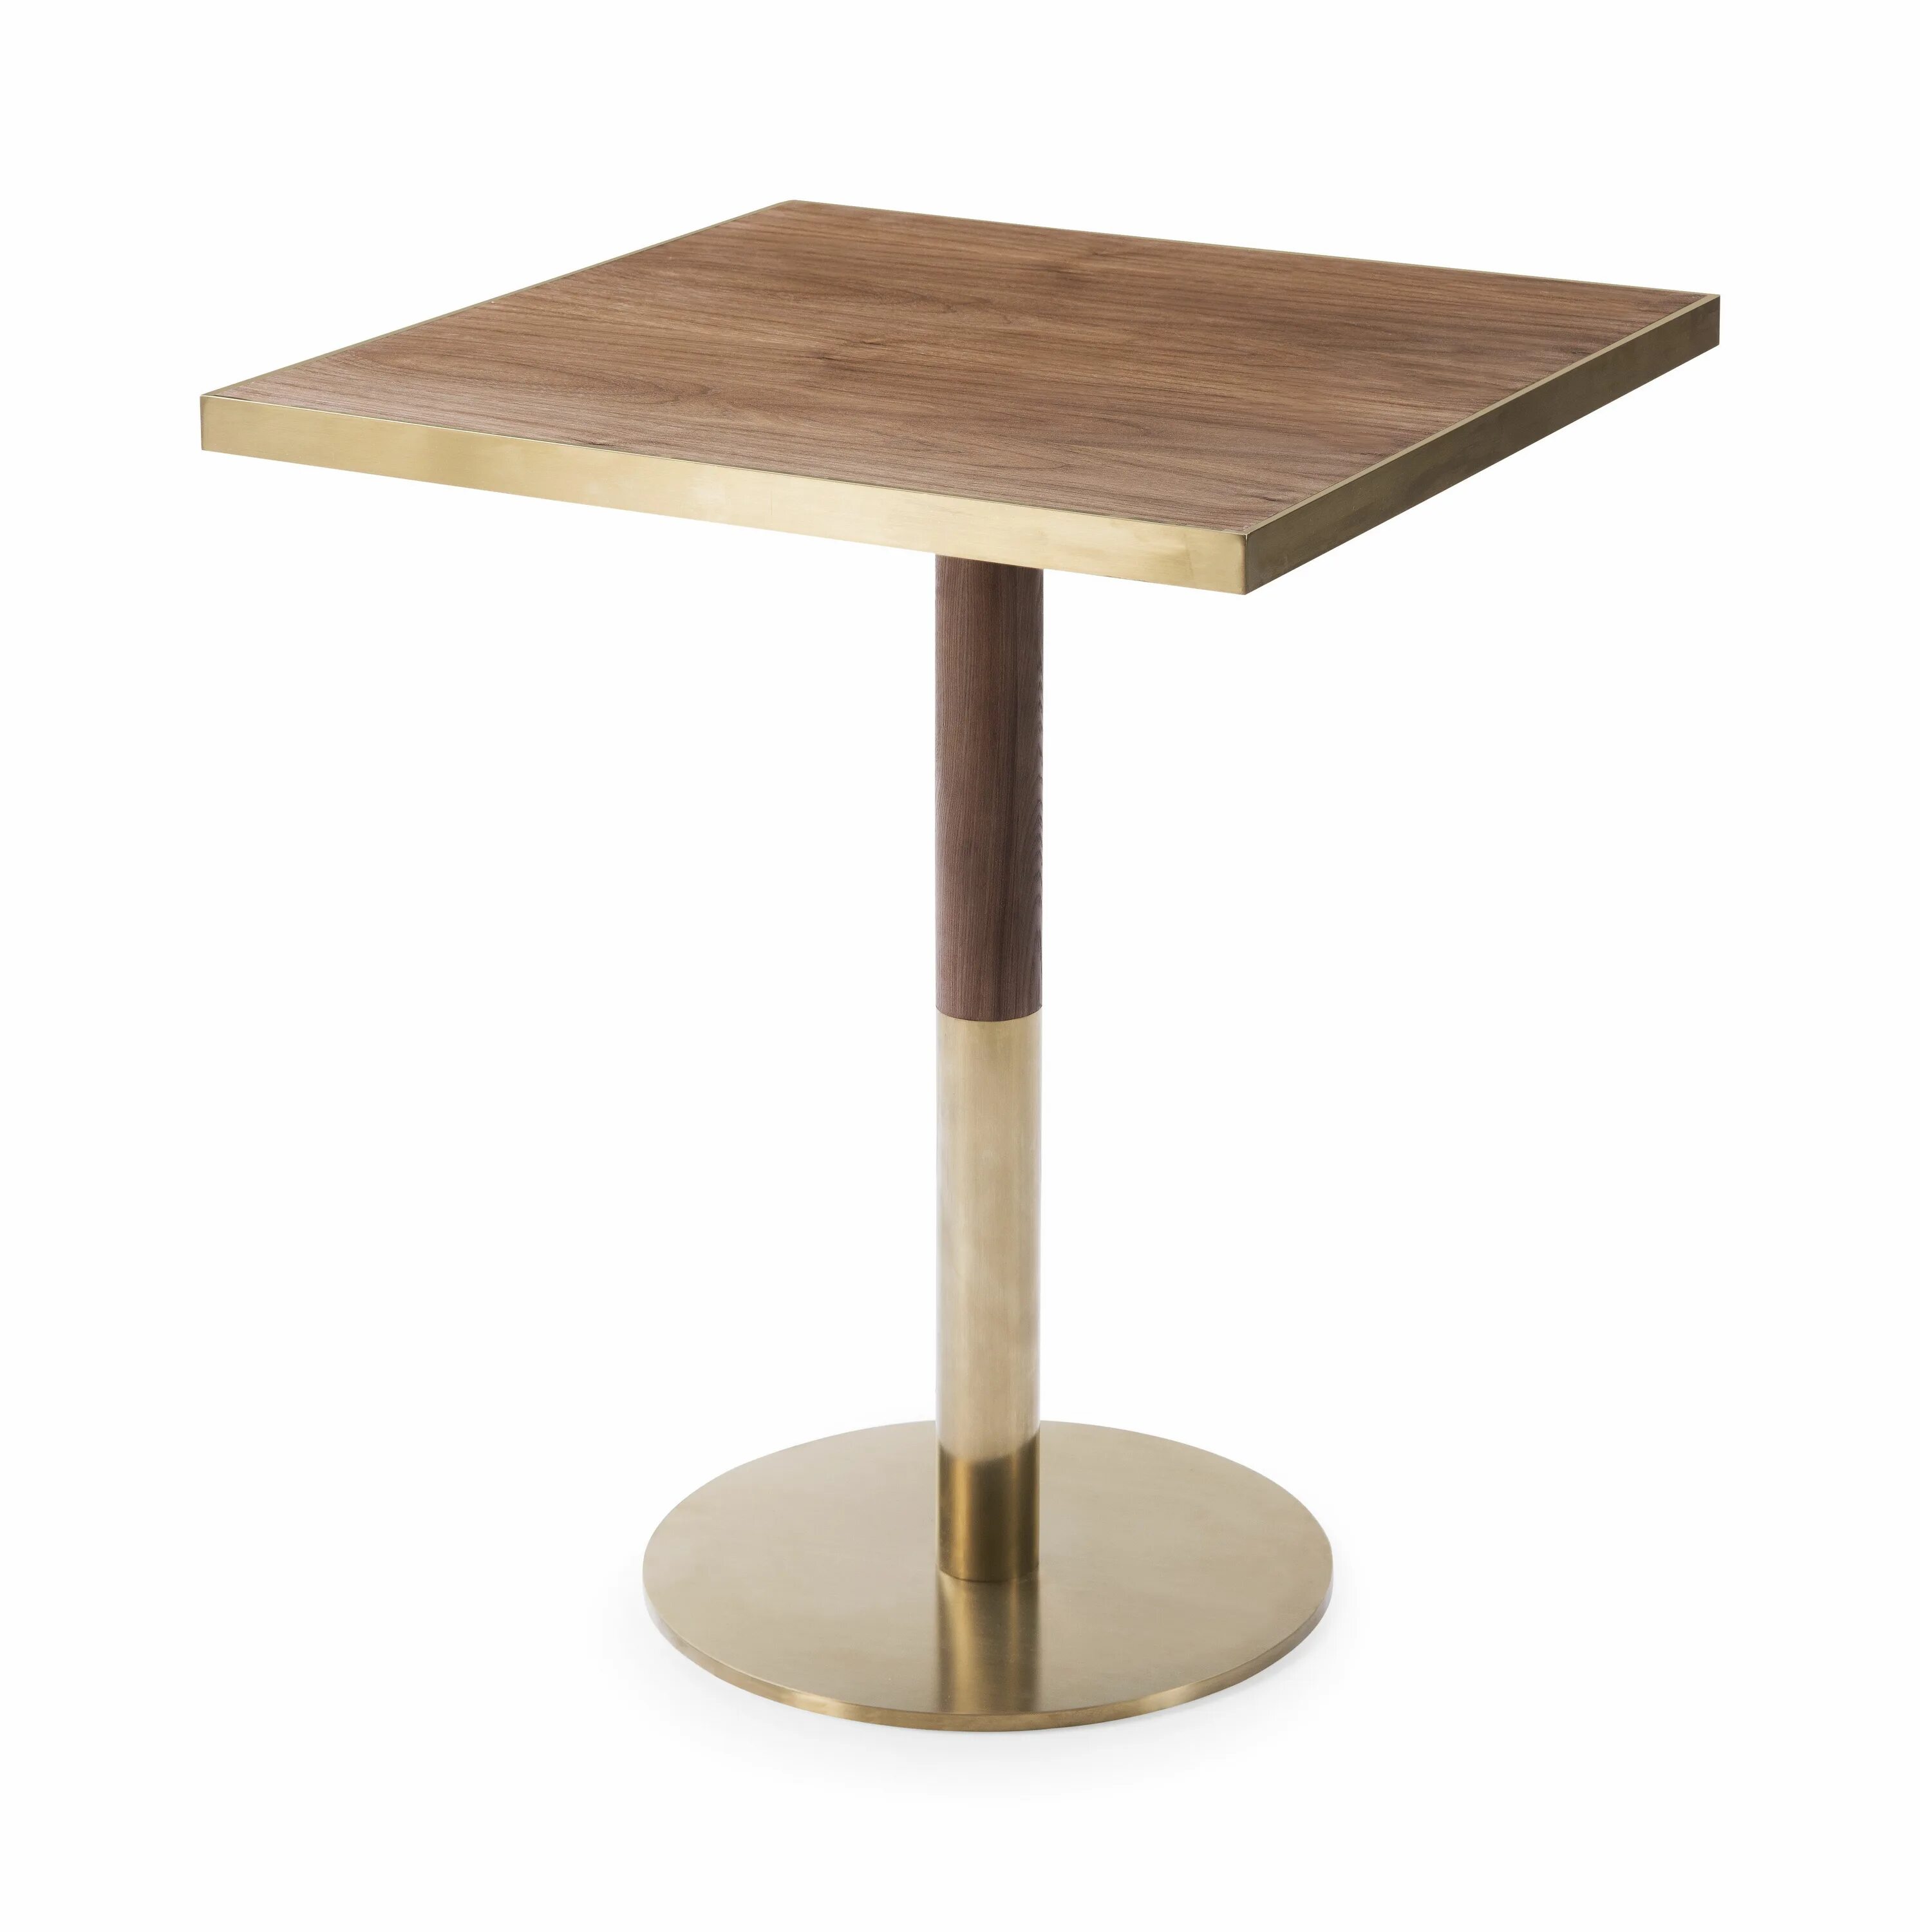 Стол с квадратными ножками. Стол квадратный деревянный. Стол для кафе квадратный. Стол квадратный на одной ножке.